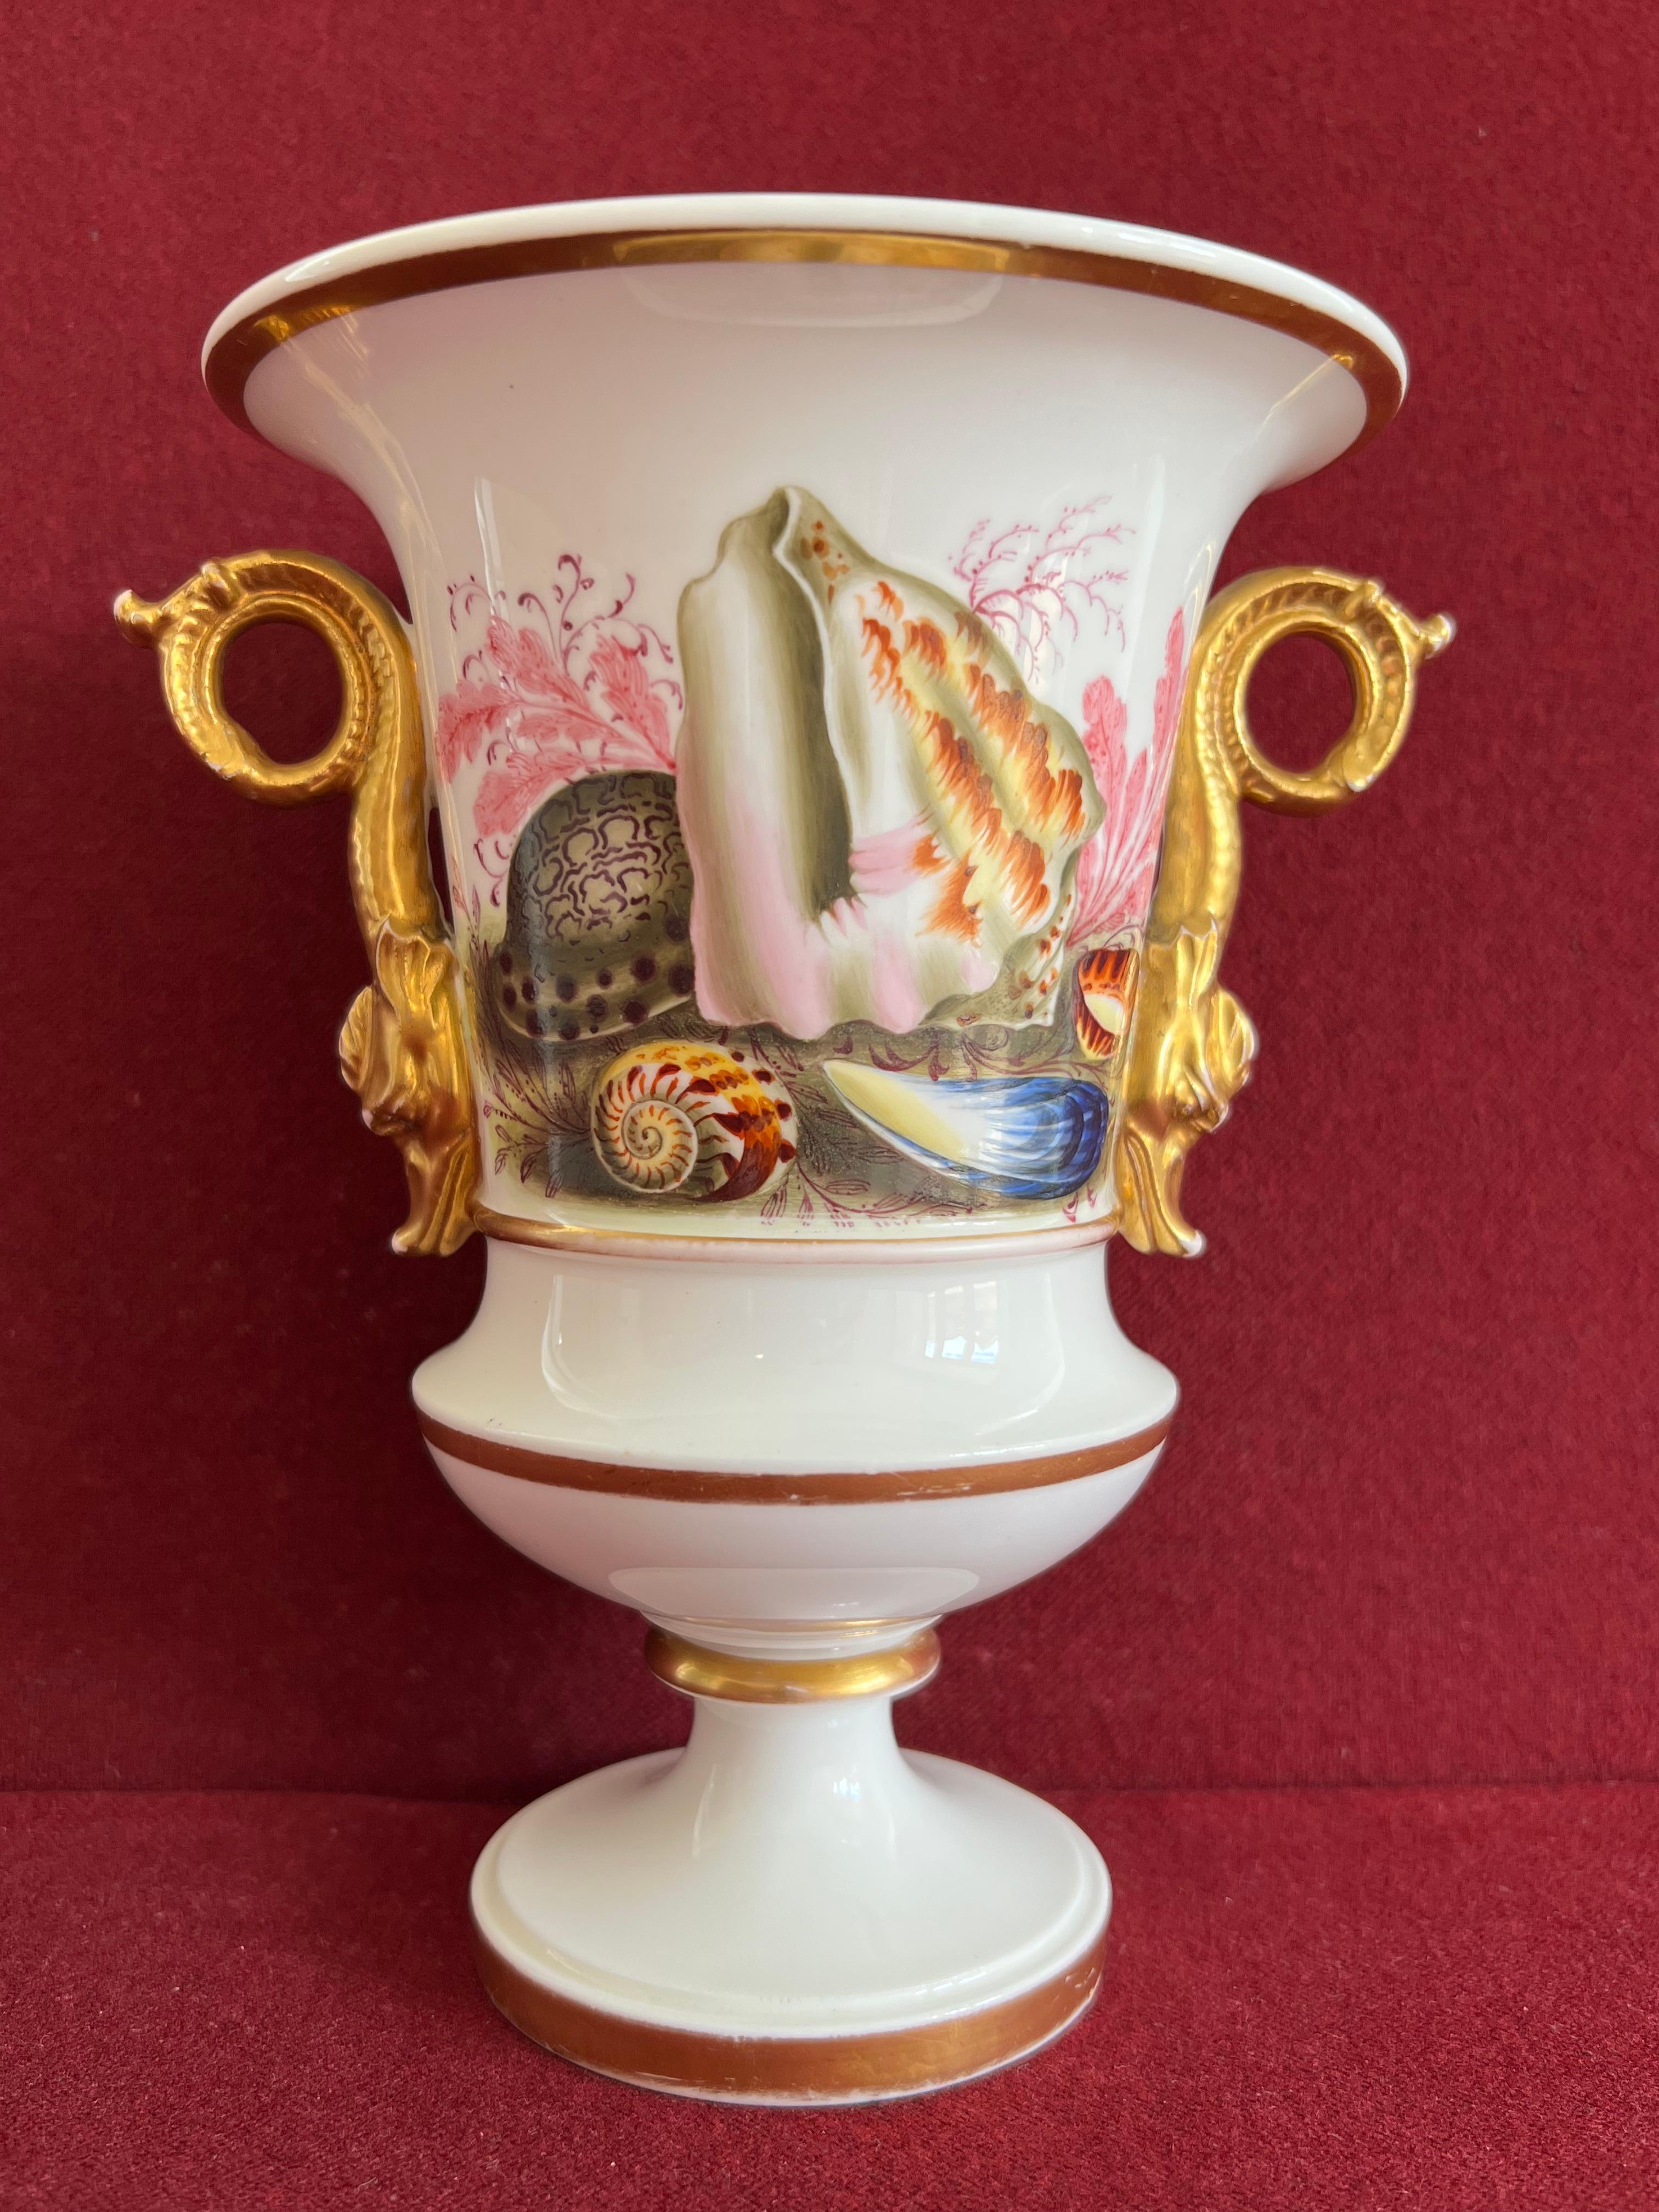 Un vase en porcelaine Spode incroyablement beau et rare, décoré de coquillages à l'avant et de fleurs à l'arrière.

Le nom de la forme est 